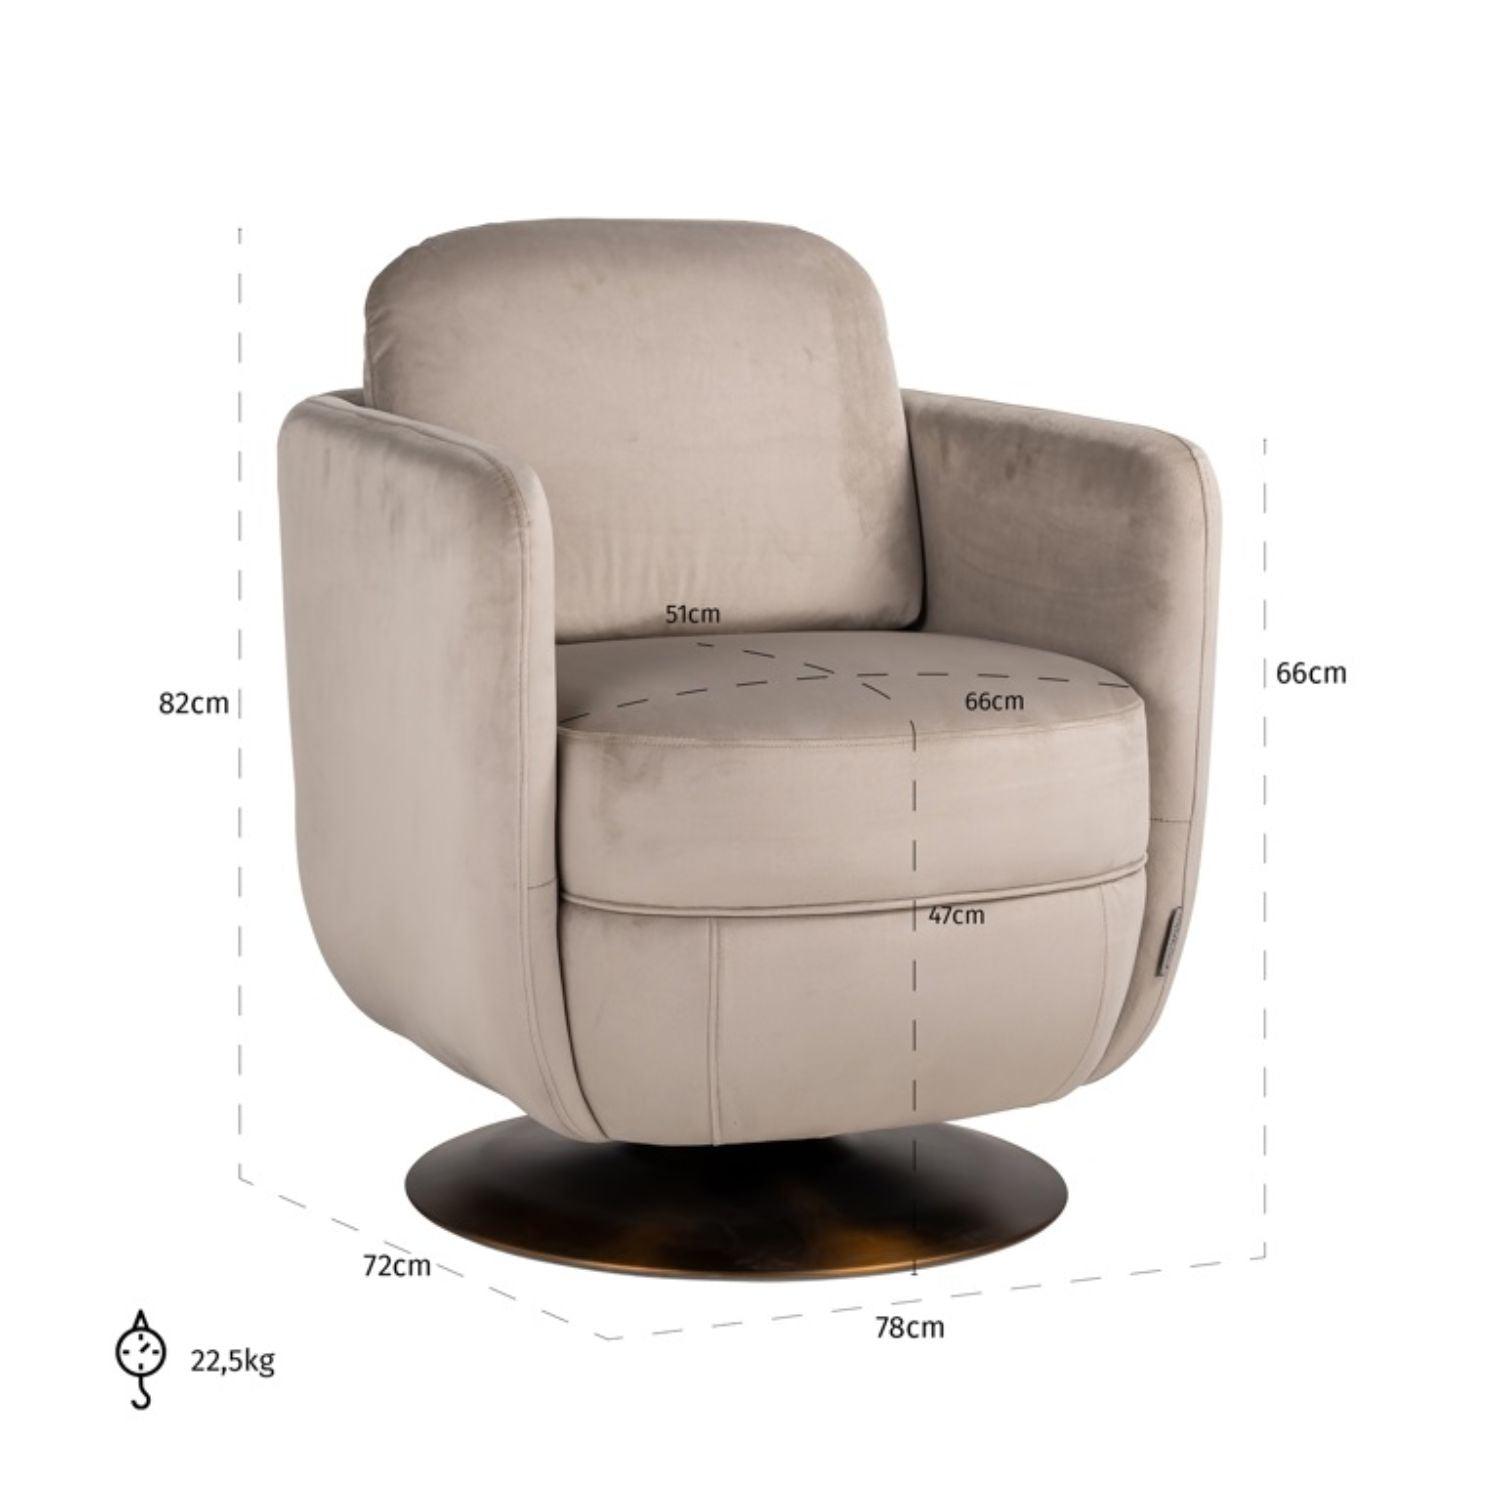 Richmond Interiors Turner Swivel Chair in Khaki Velvet S4576 FR - Fellini Home Ltd